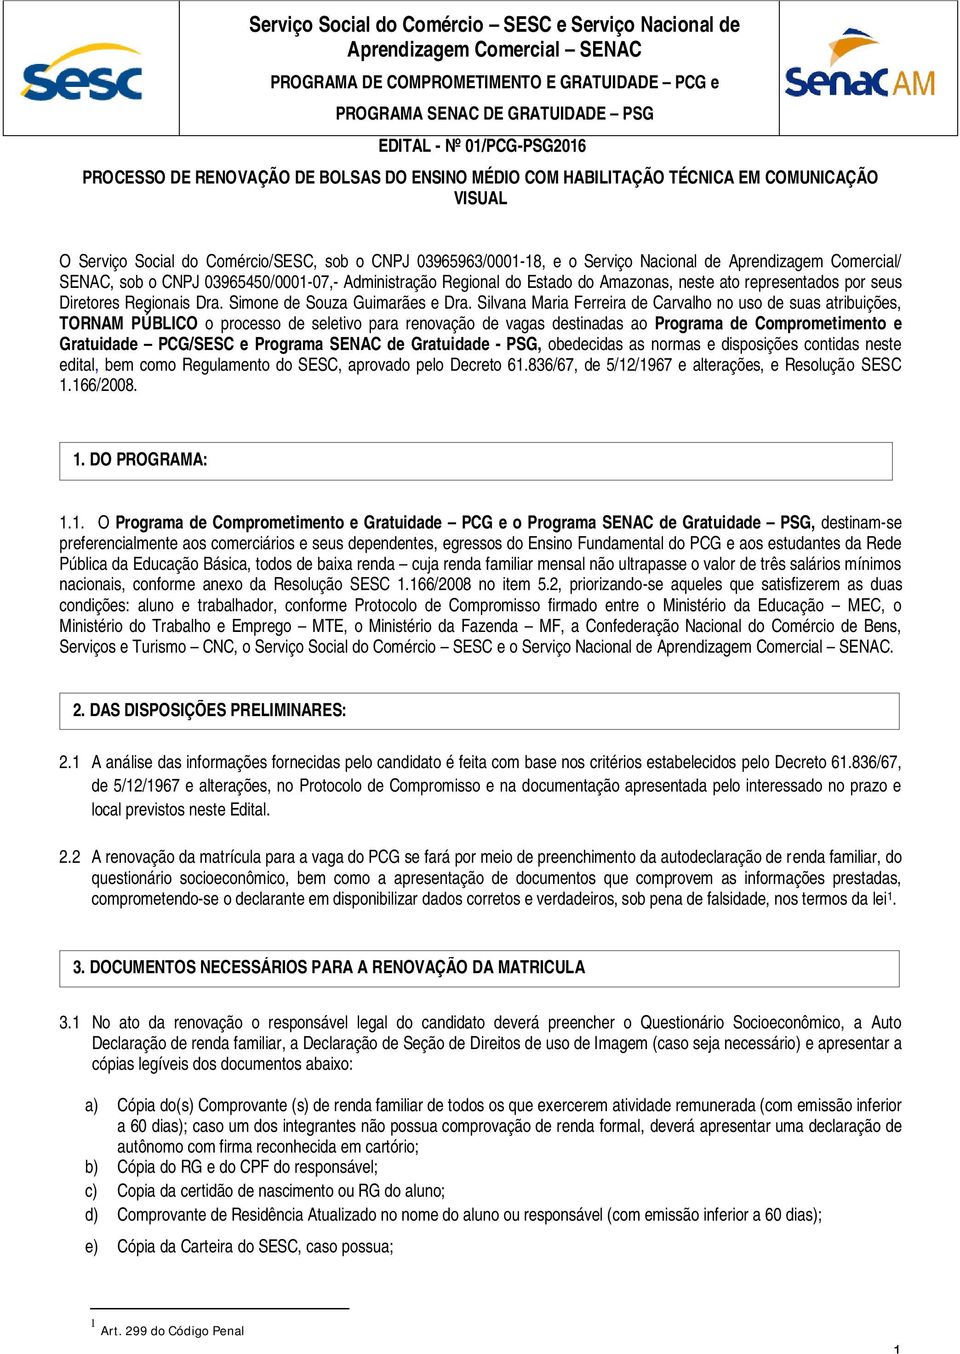 SENAC, sob o CNPJ 03965450/0001-07,- Administração Regional do Estado do Amazonas, neste ato representados por seus Diretores Regionais Dra. Simone de Souza Guimarães e Dra.